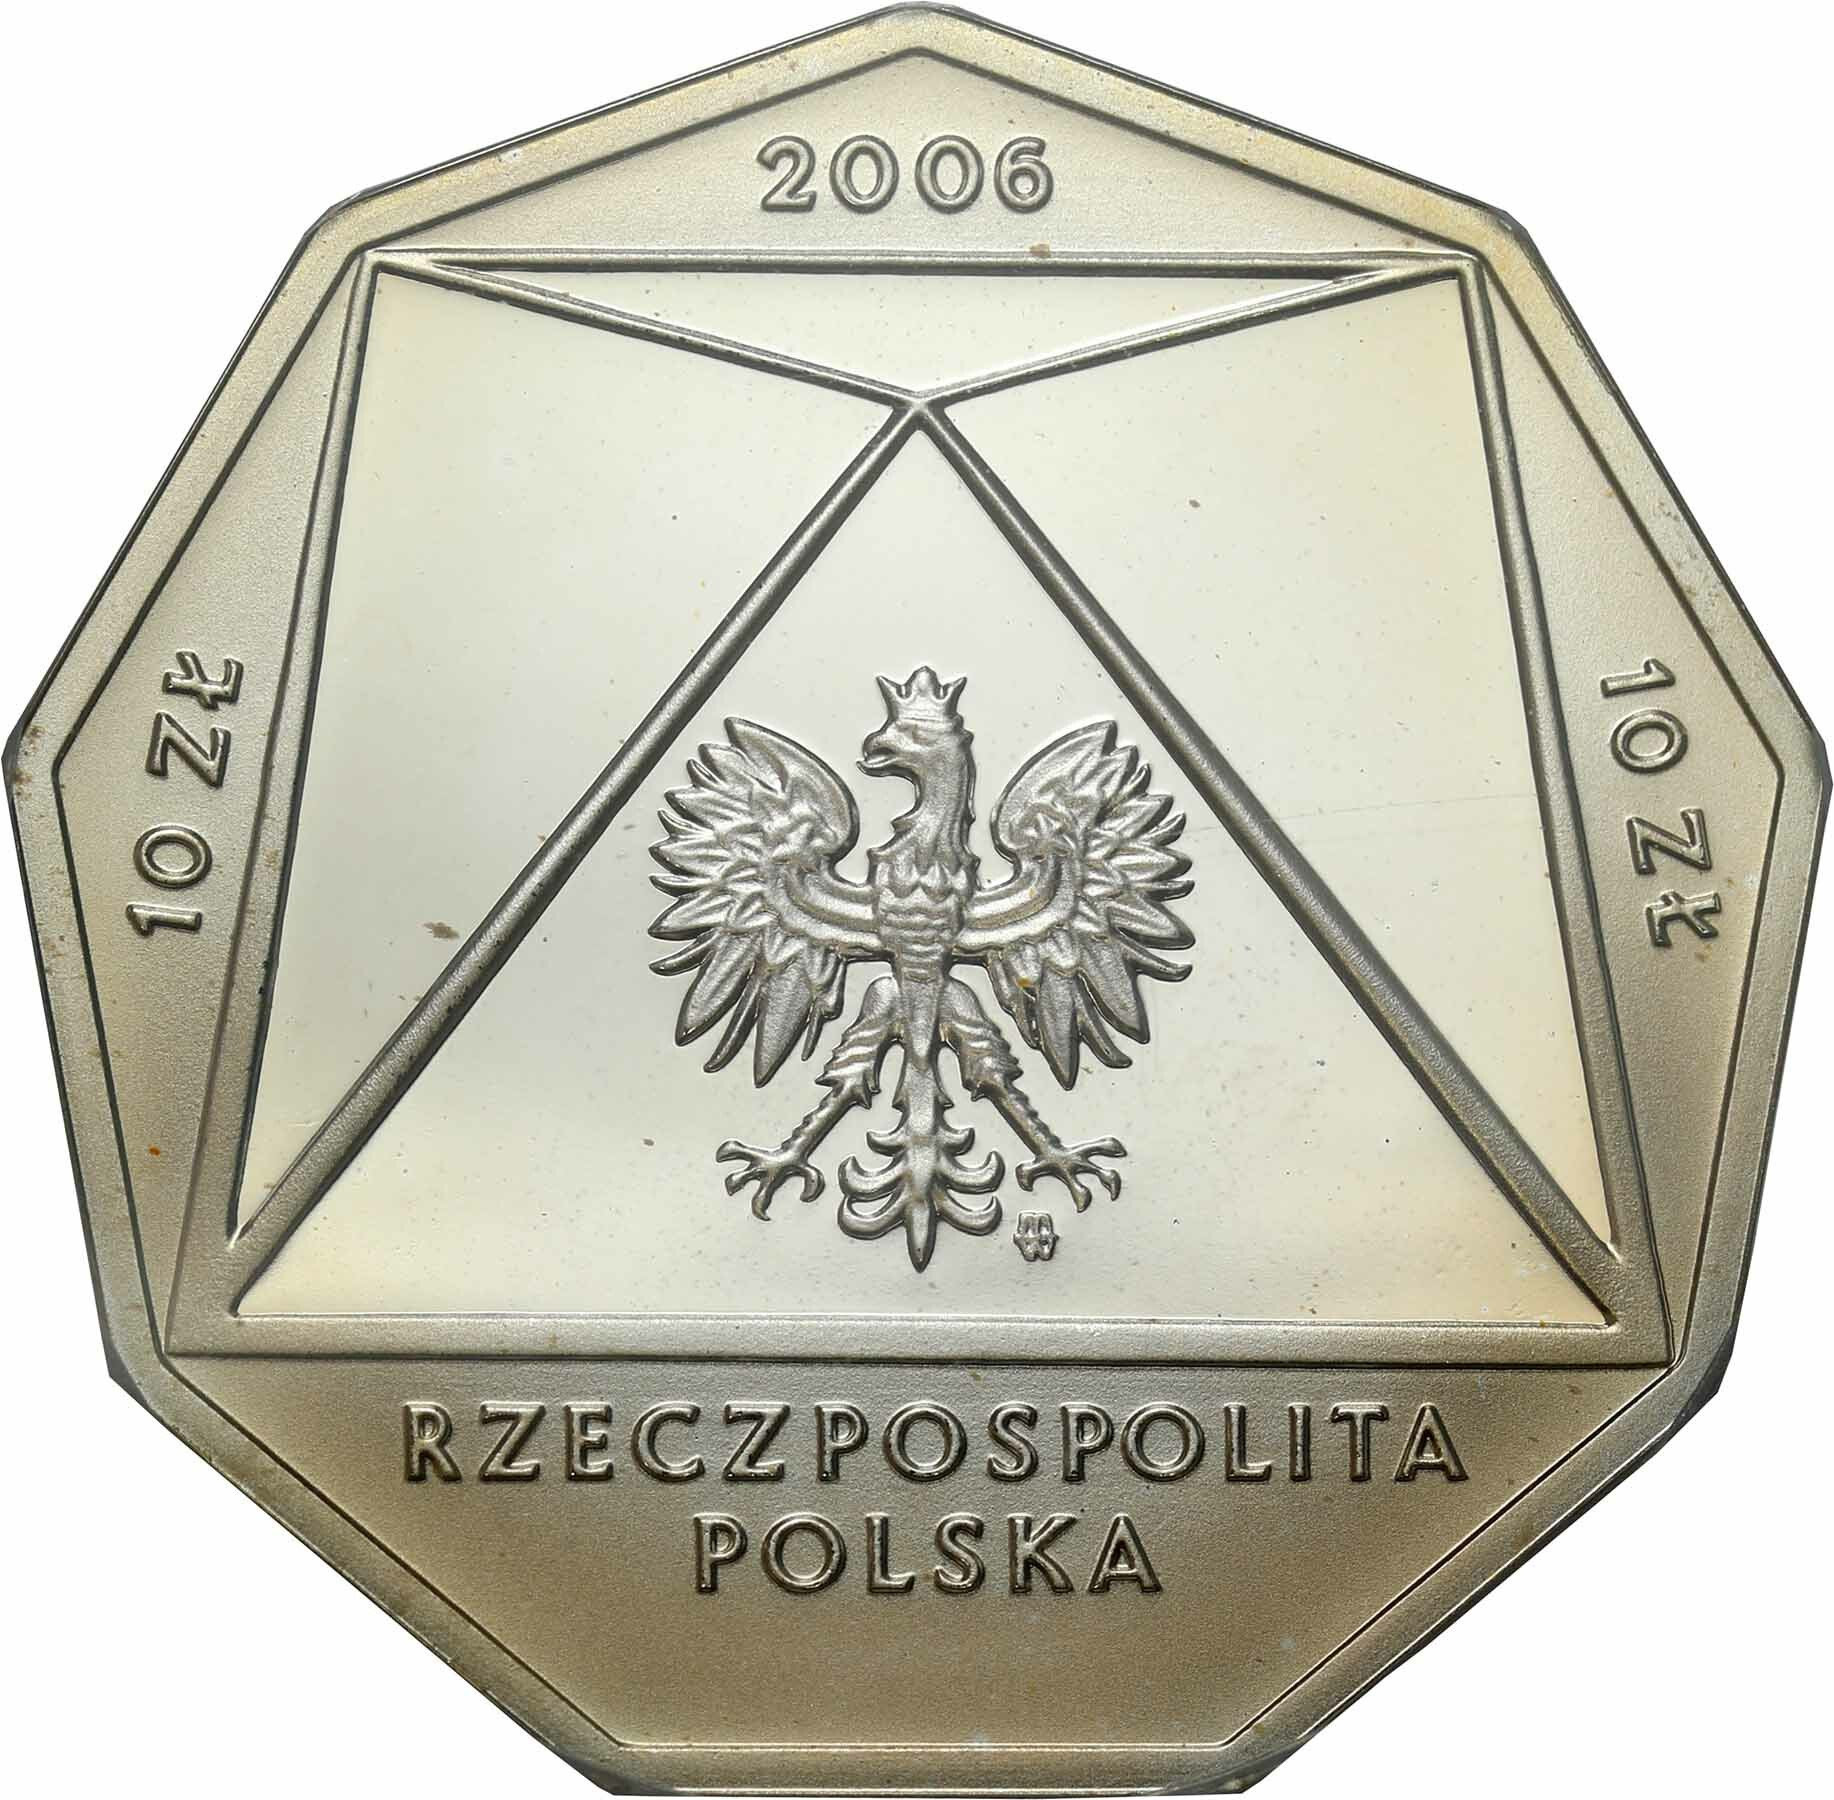 10 złotych 2006 Szkoła Główna Handlowa PCGS PR69 DCAM (2MAX)